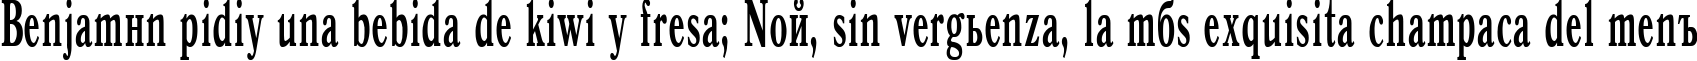 Пример написания шрифтом Antiqua50B текста на испанском